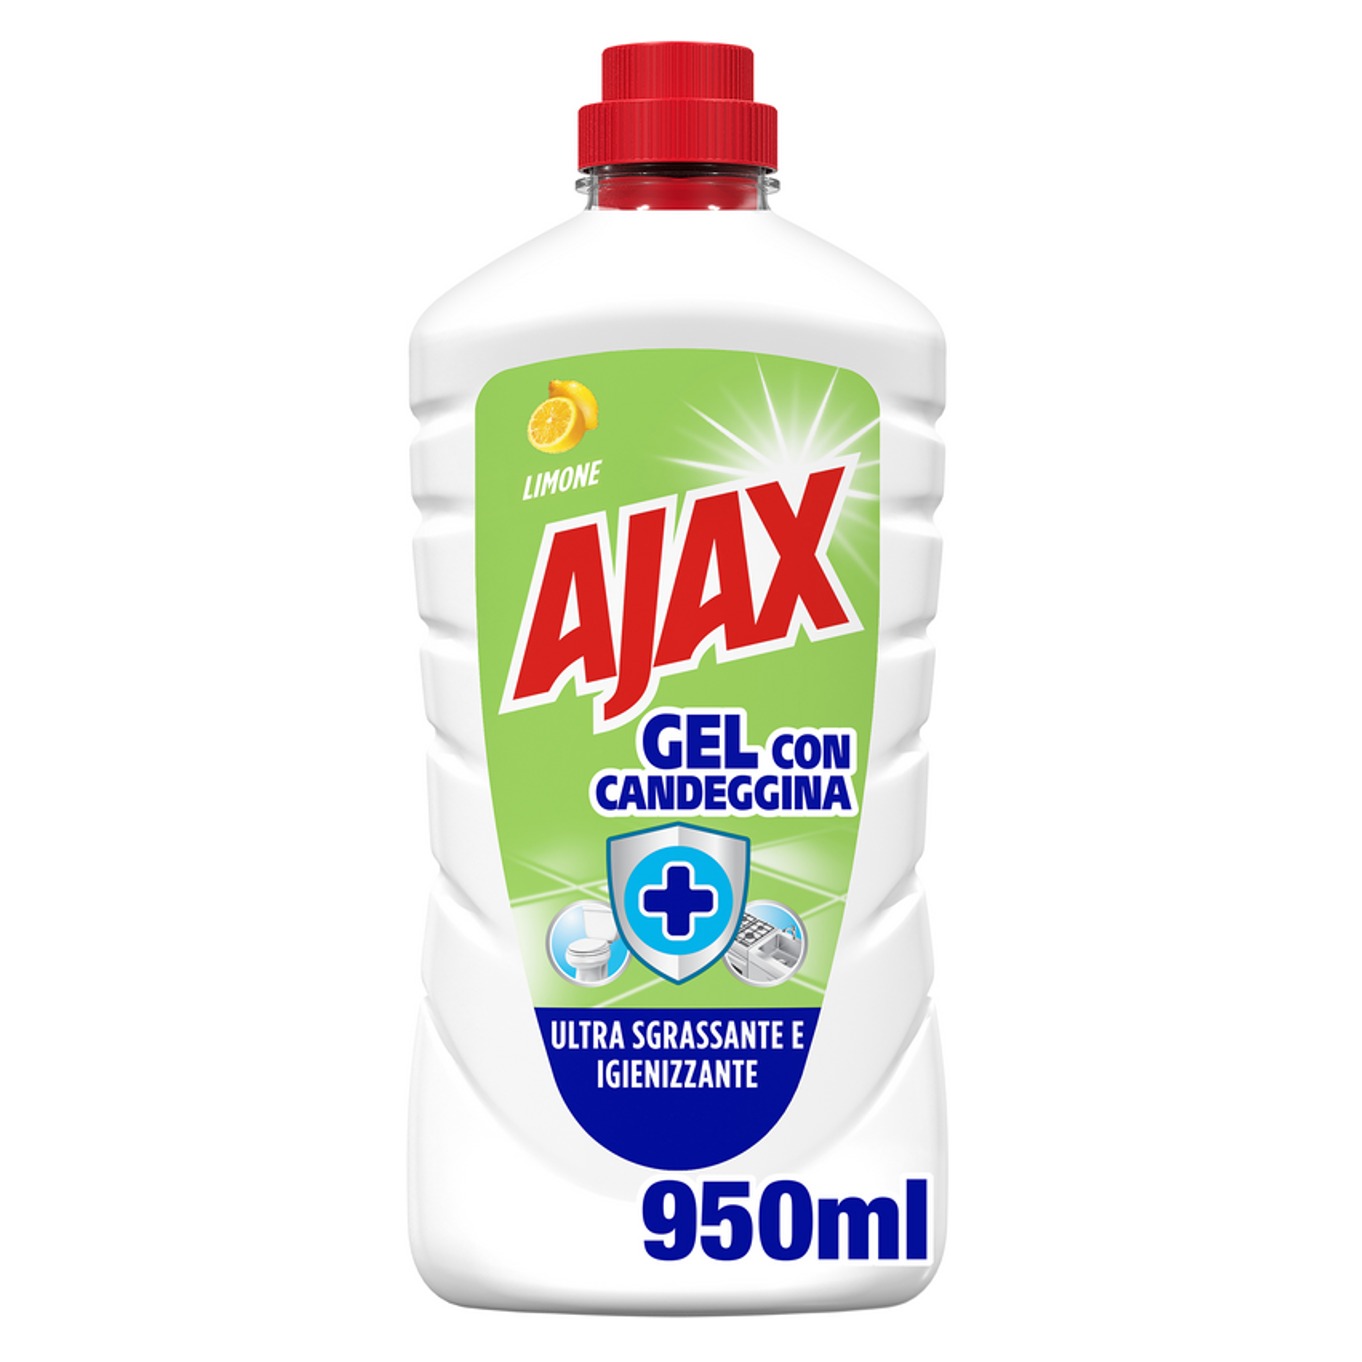 AJAX GEL 950ML. C/CANDEGGINA 